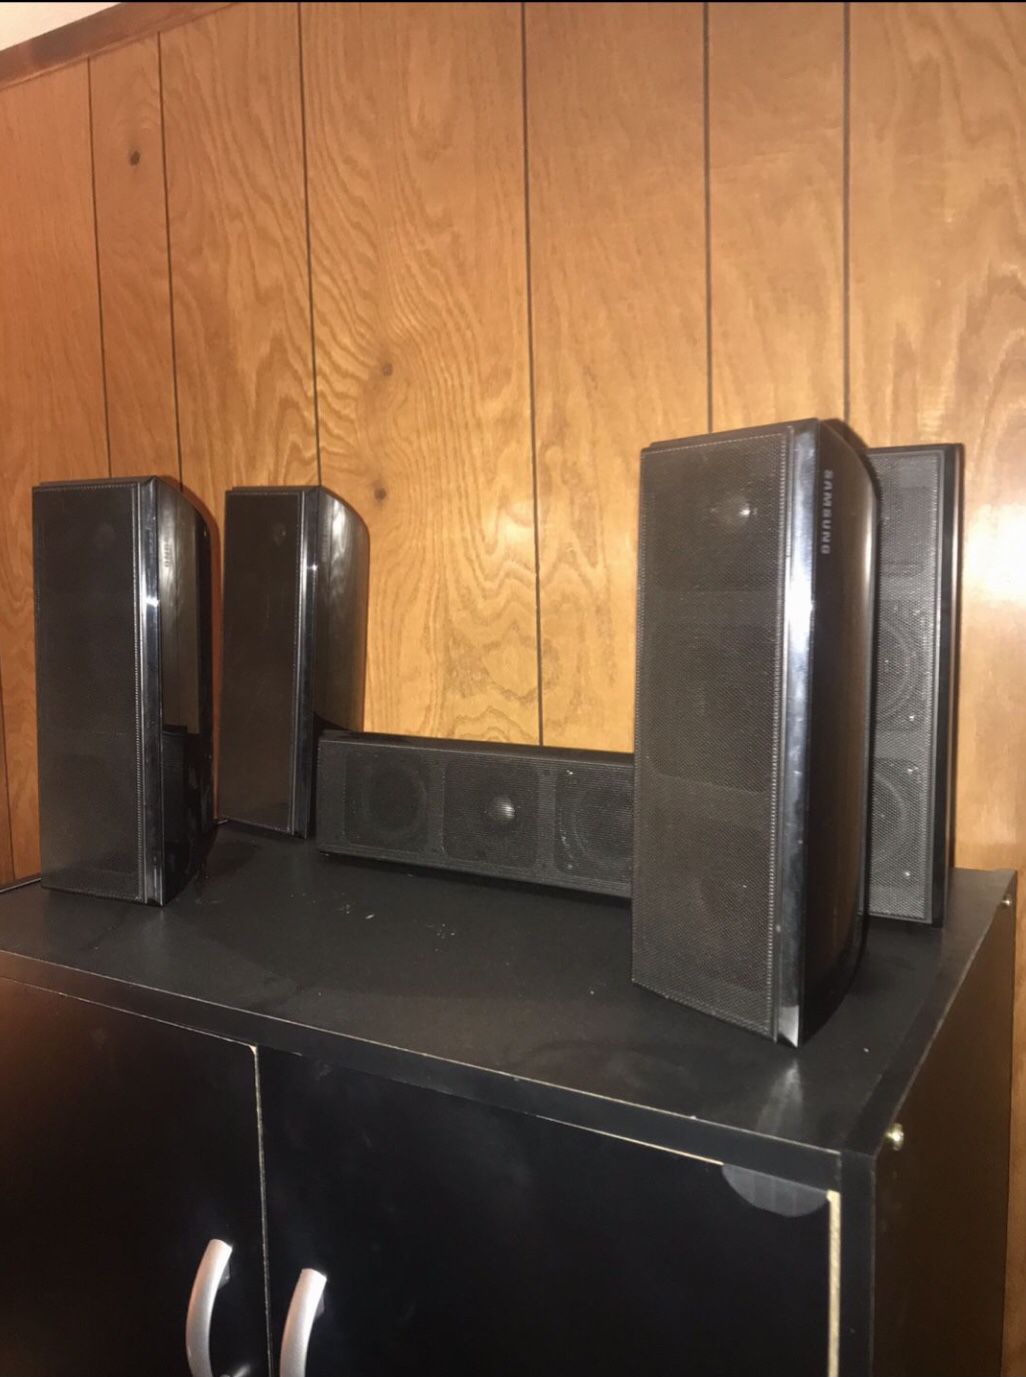 Surround Sound Speakers 